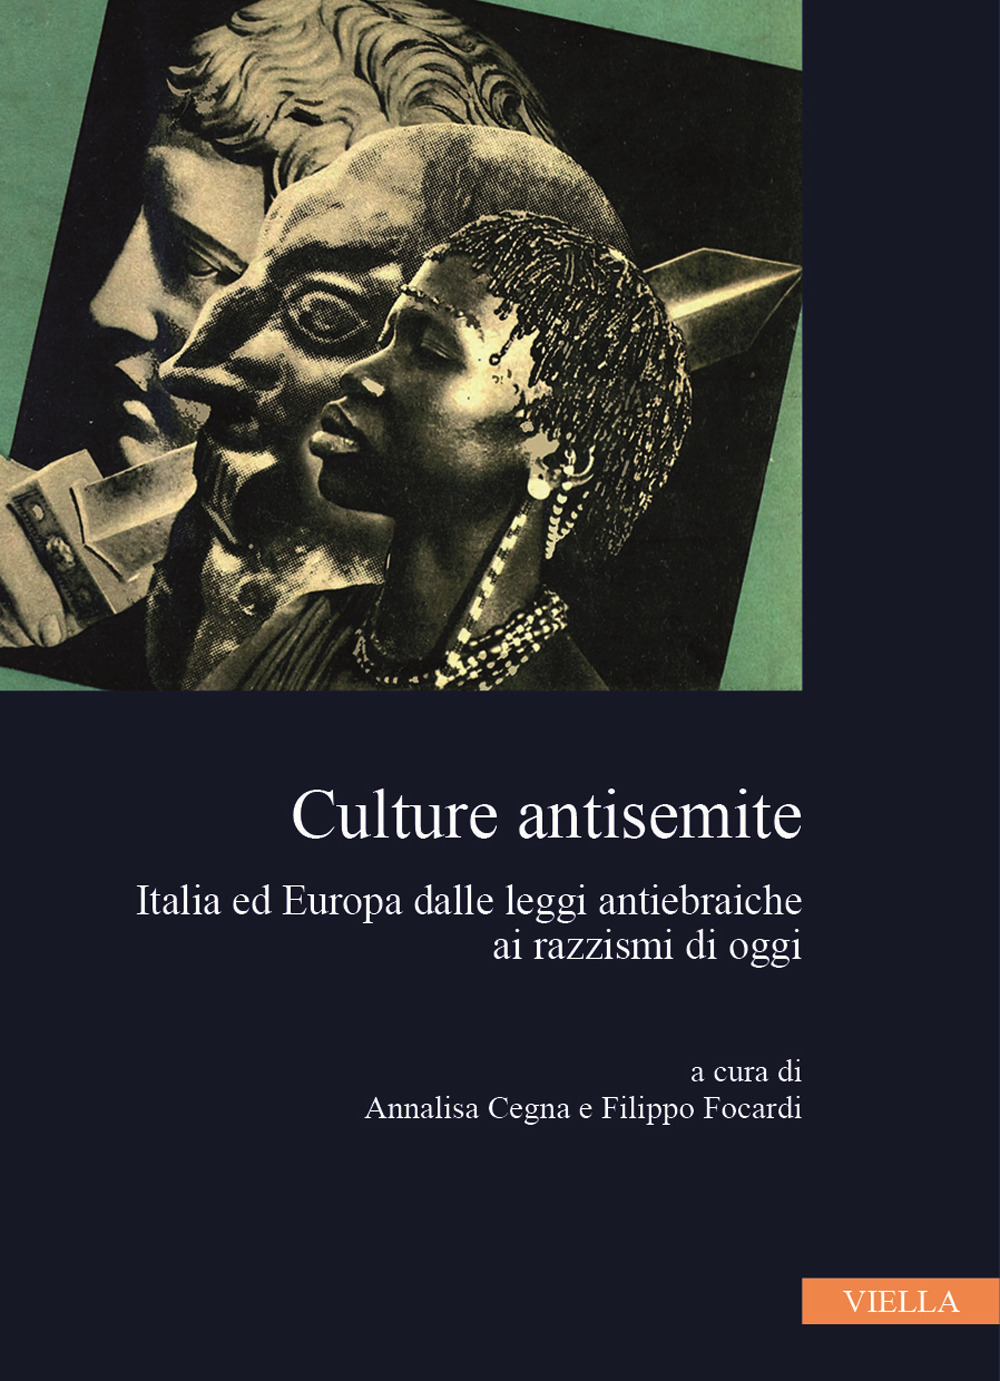 Culture antisemite. Italia ed Europa dalle leggi antiebraiche ai razzismi di oggi